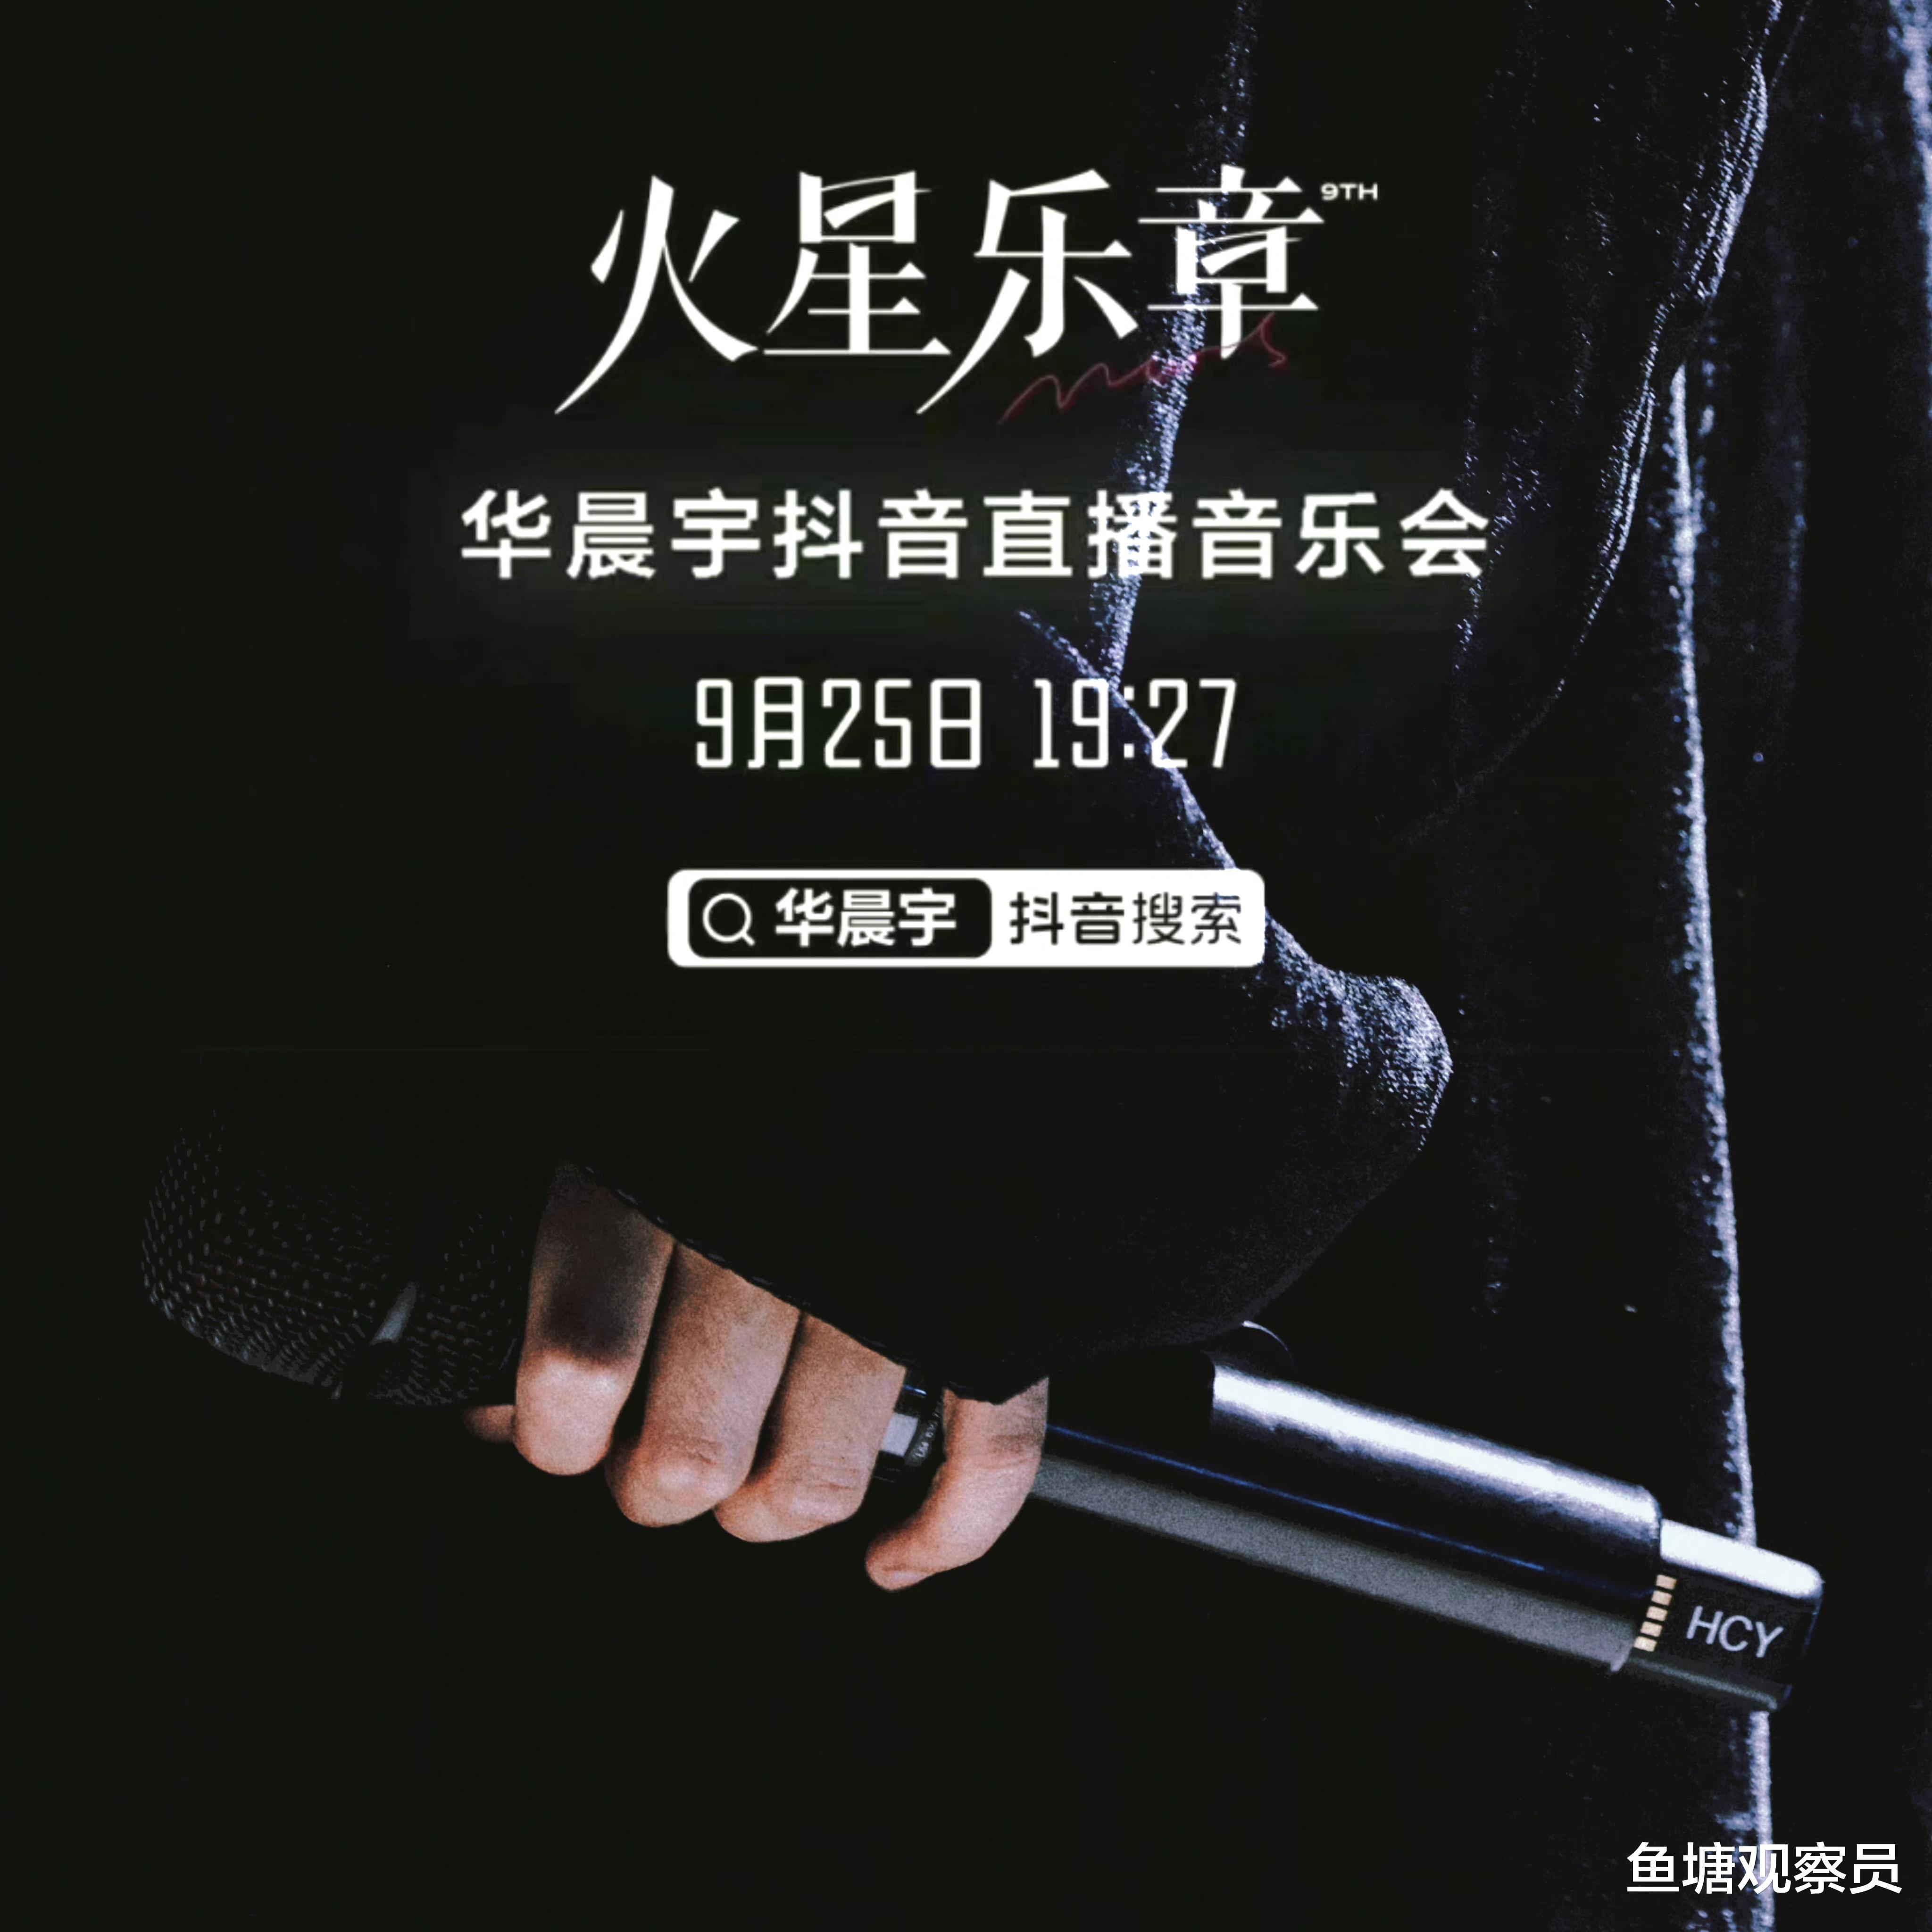 华晨宇925线上音乐会彩排进行中，顶级配置和首创形式引期待